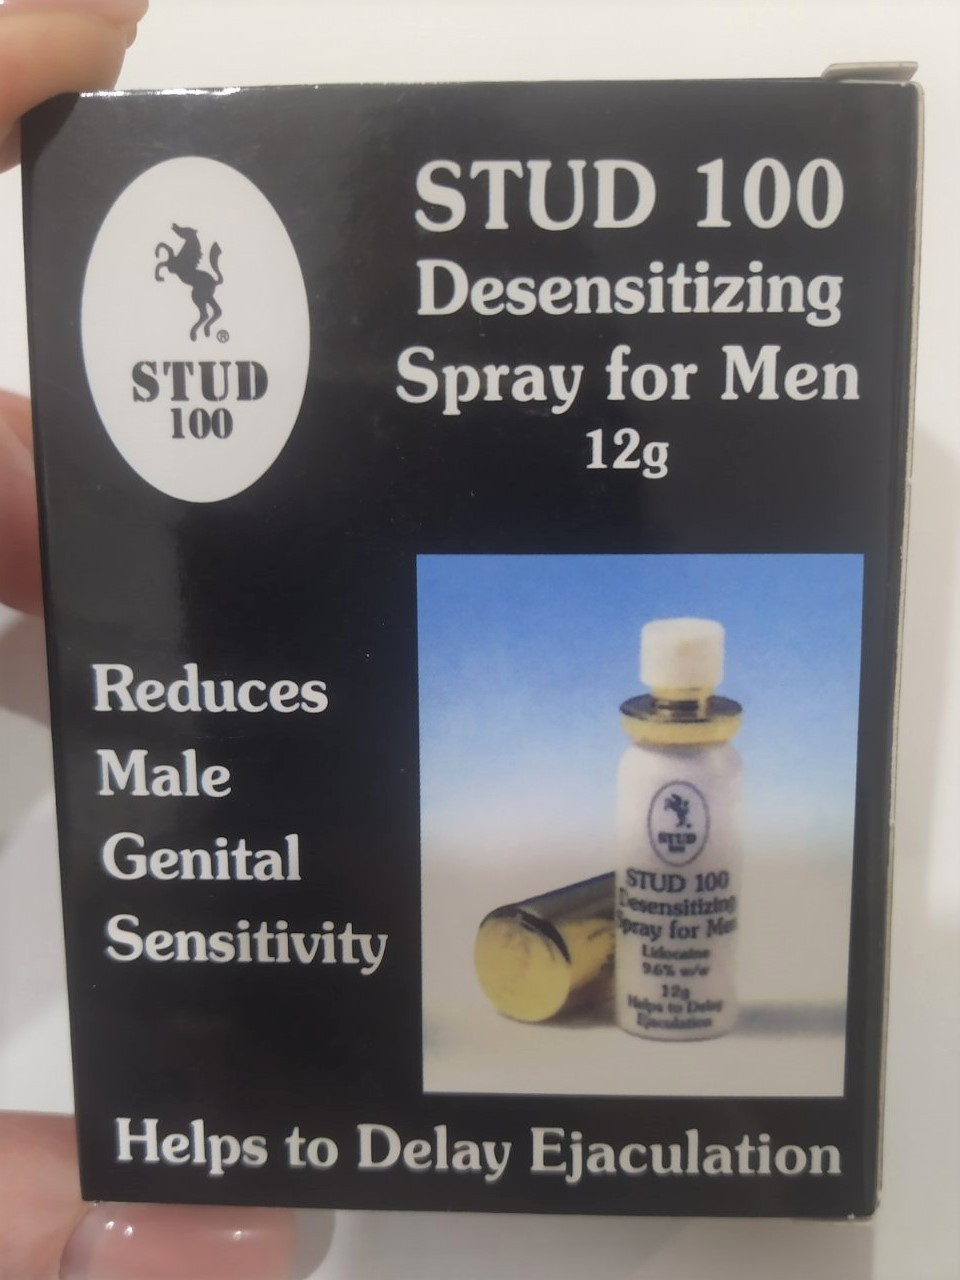 Спрей-пролонгатор "Stud 100" - "Студ 100" (спрей, що подовжує статевий акт у чоловіків)